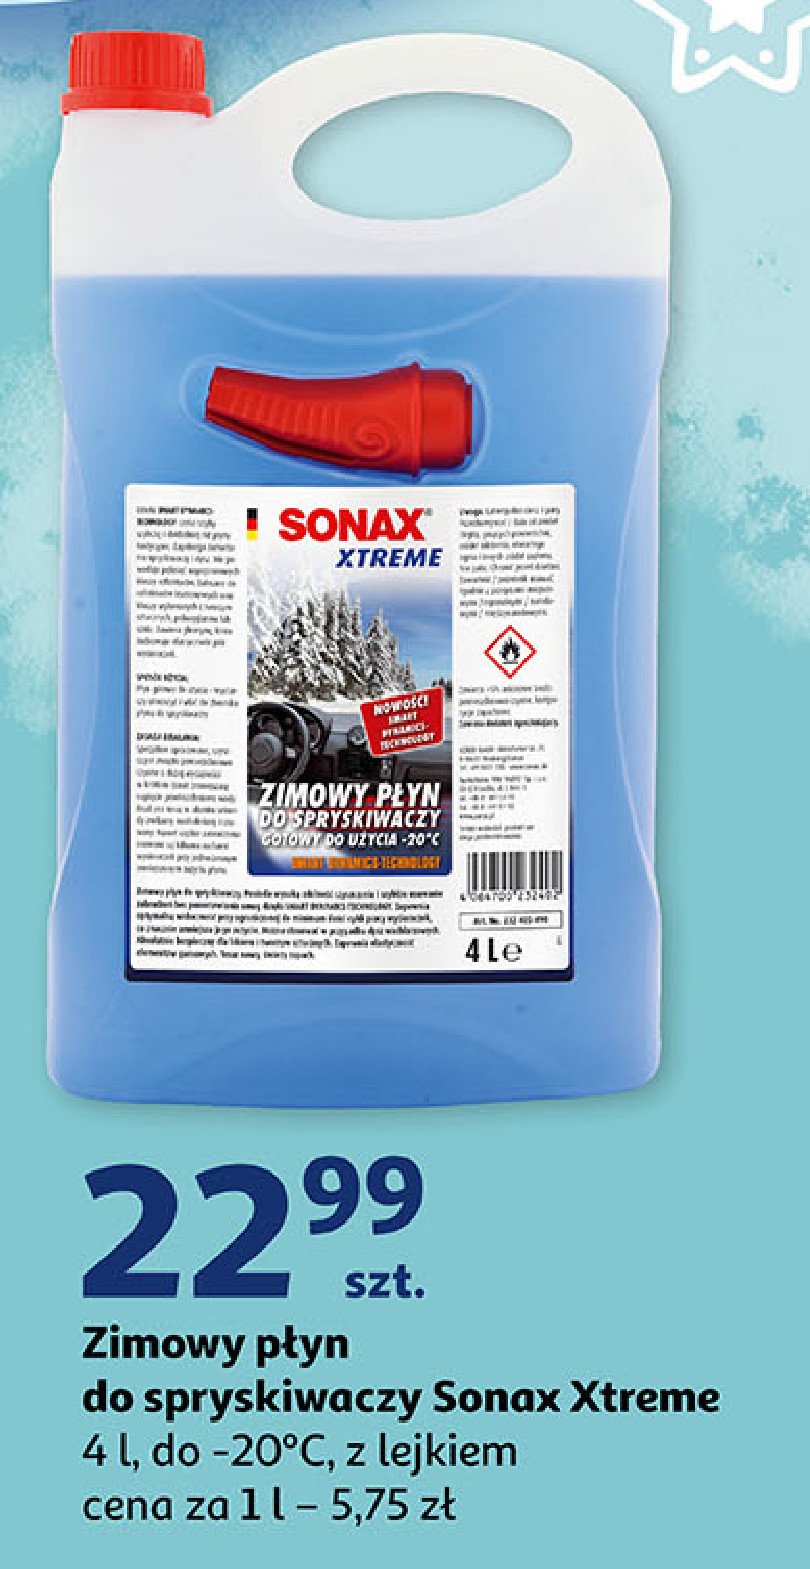 Zimowy płyn do spryskiwaczy Sonax xtreme promocja